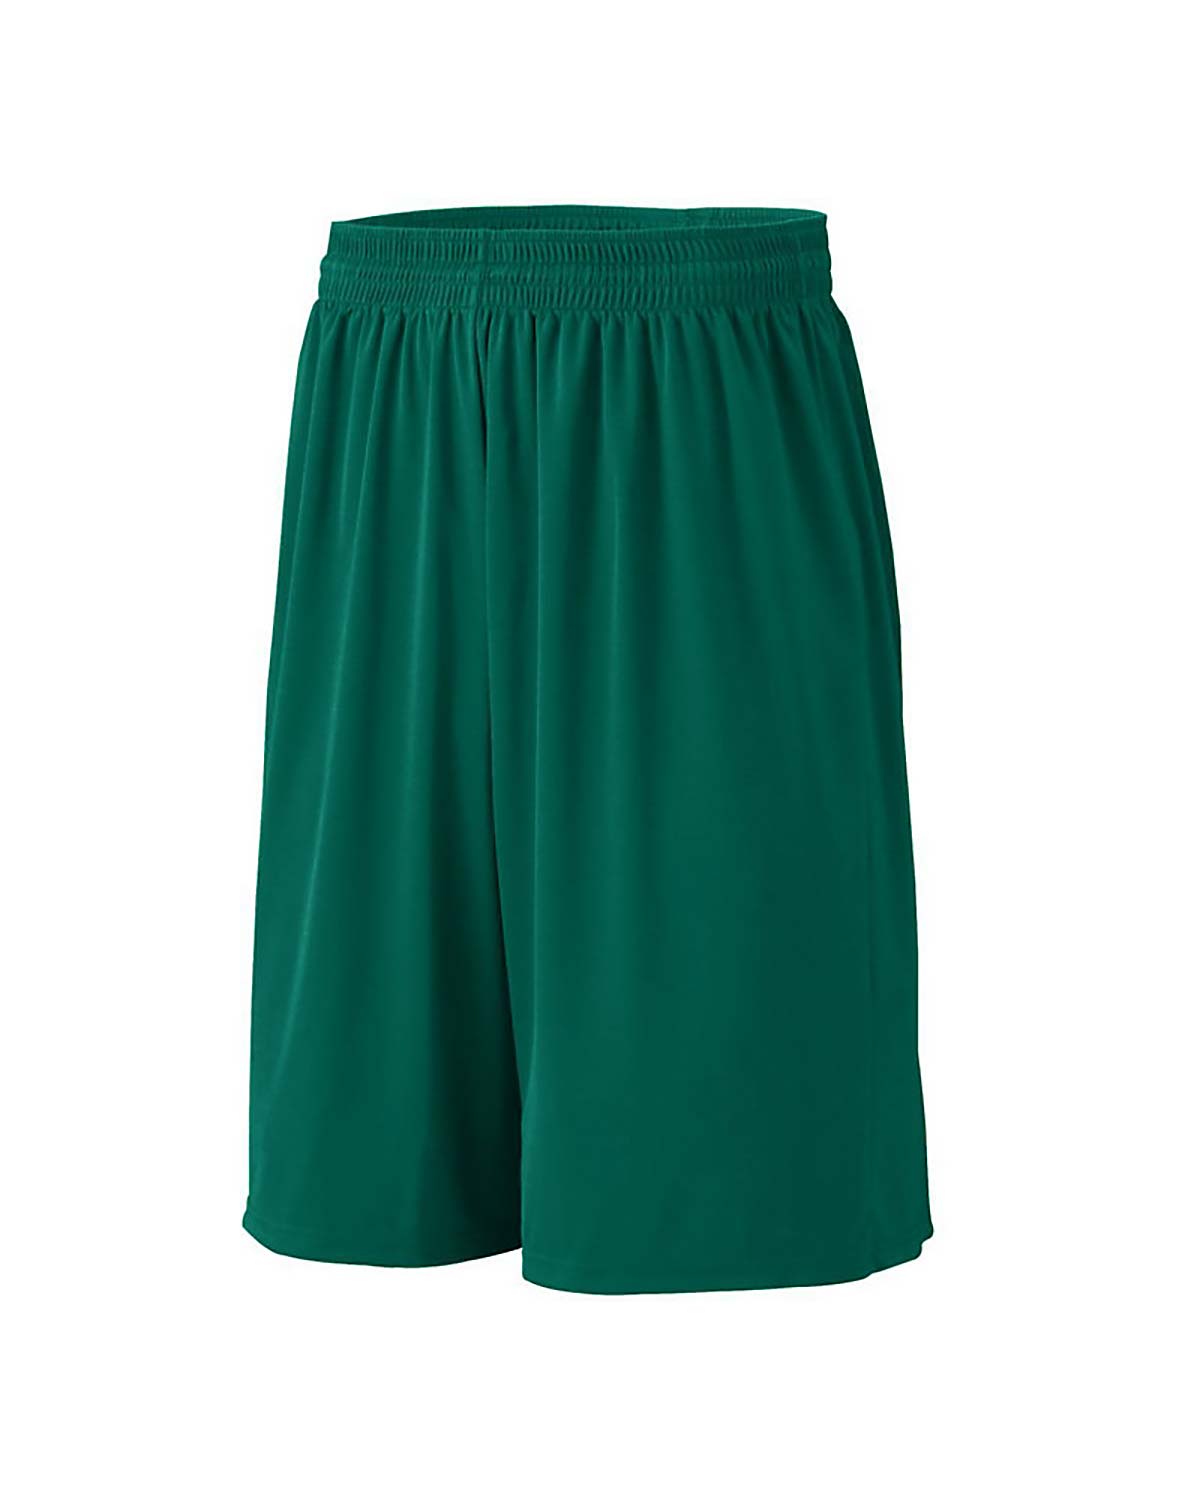 'Augusta Sportswear 1065-C Baseline Short'